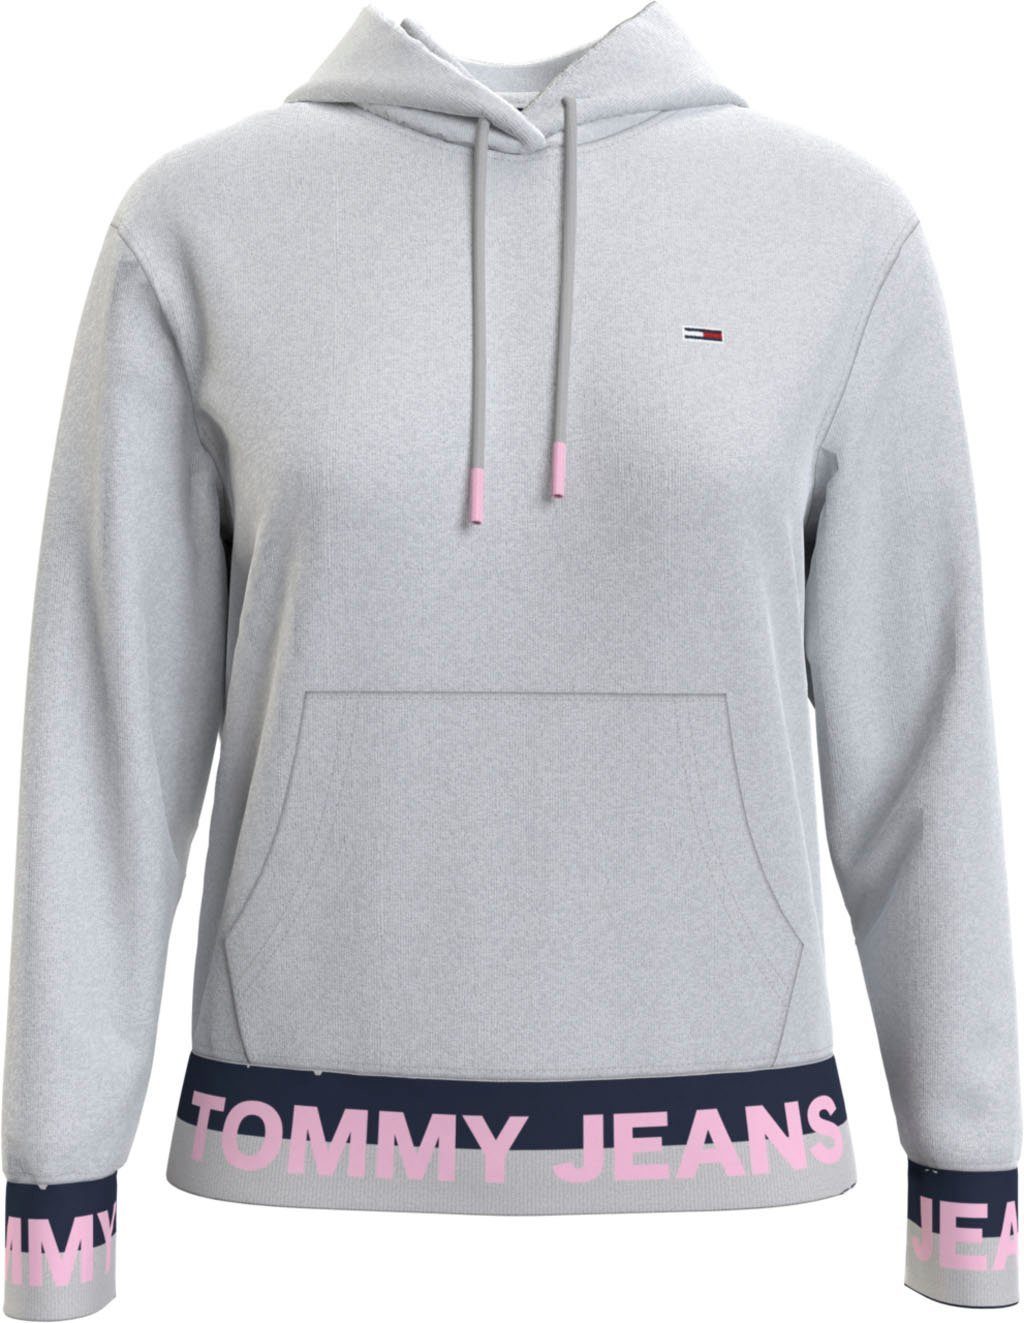 Tommy Hilfiger Hoodies online kaufen | OTTO